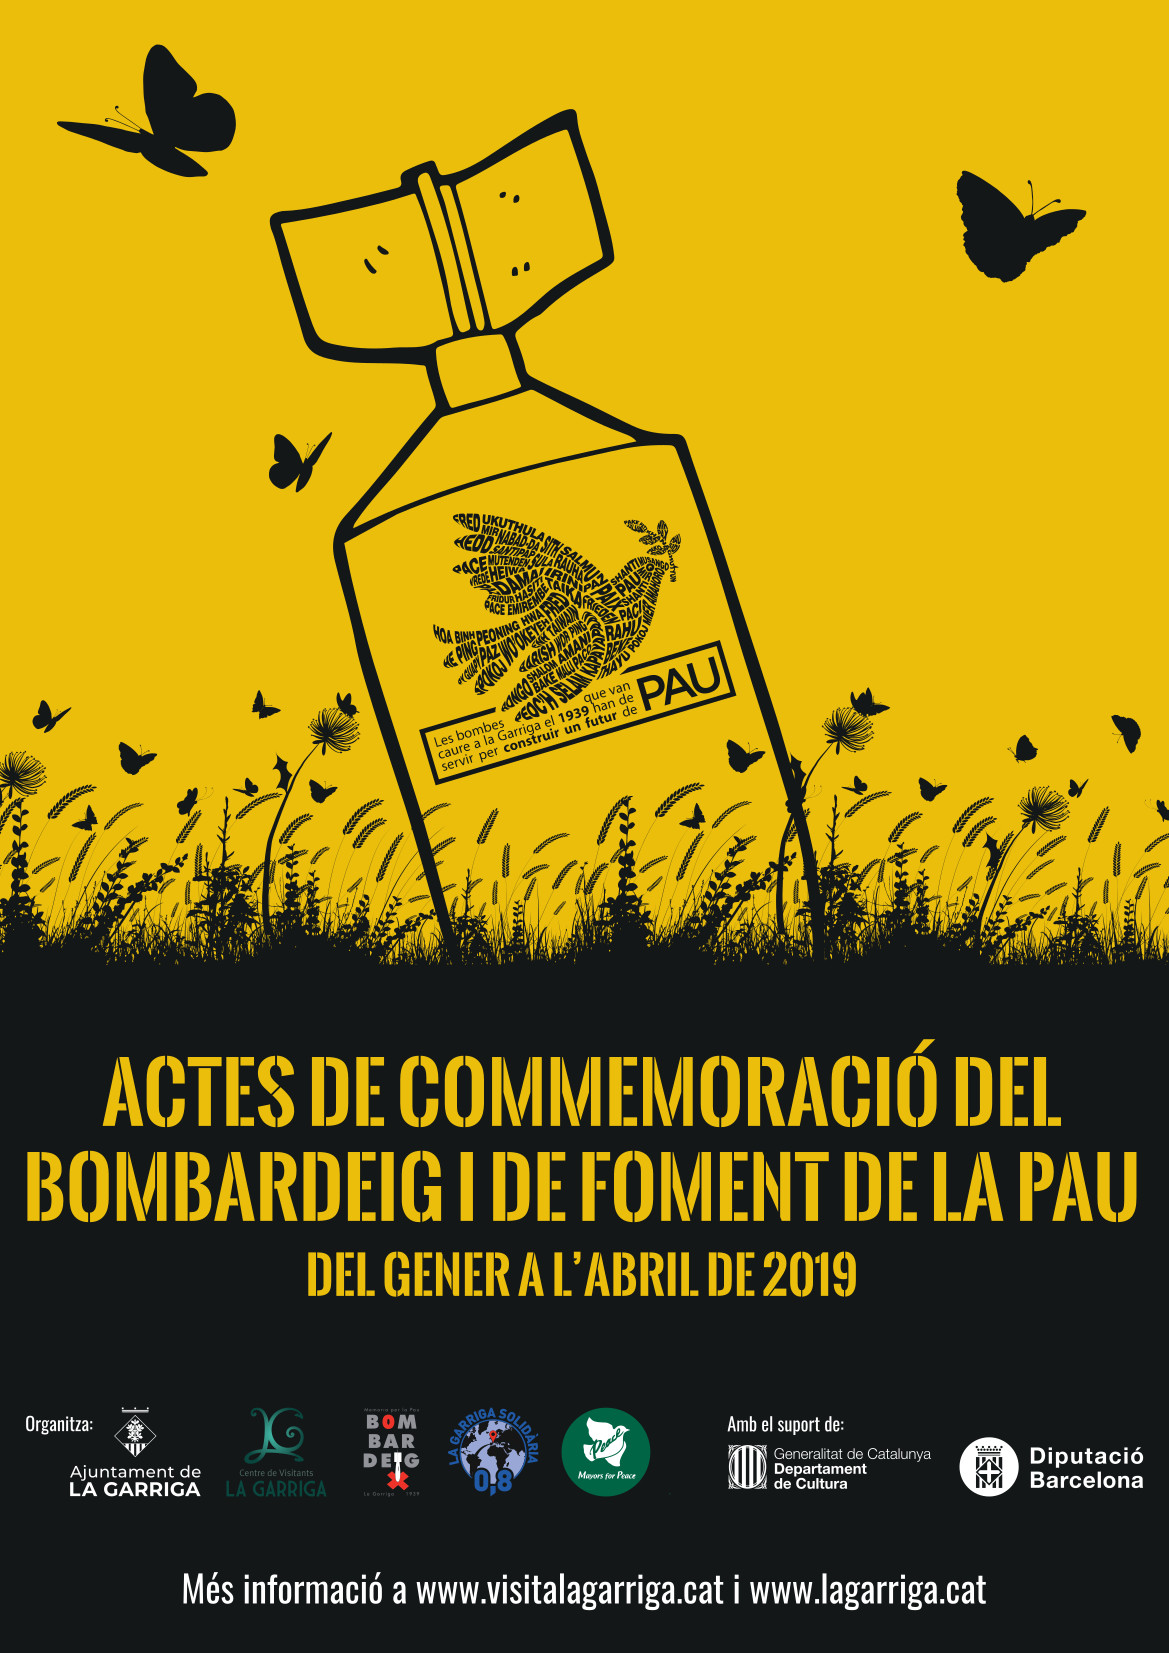 CommemoraciÃ³ del bombardeig a la Garriga 2019